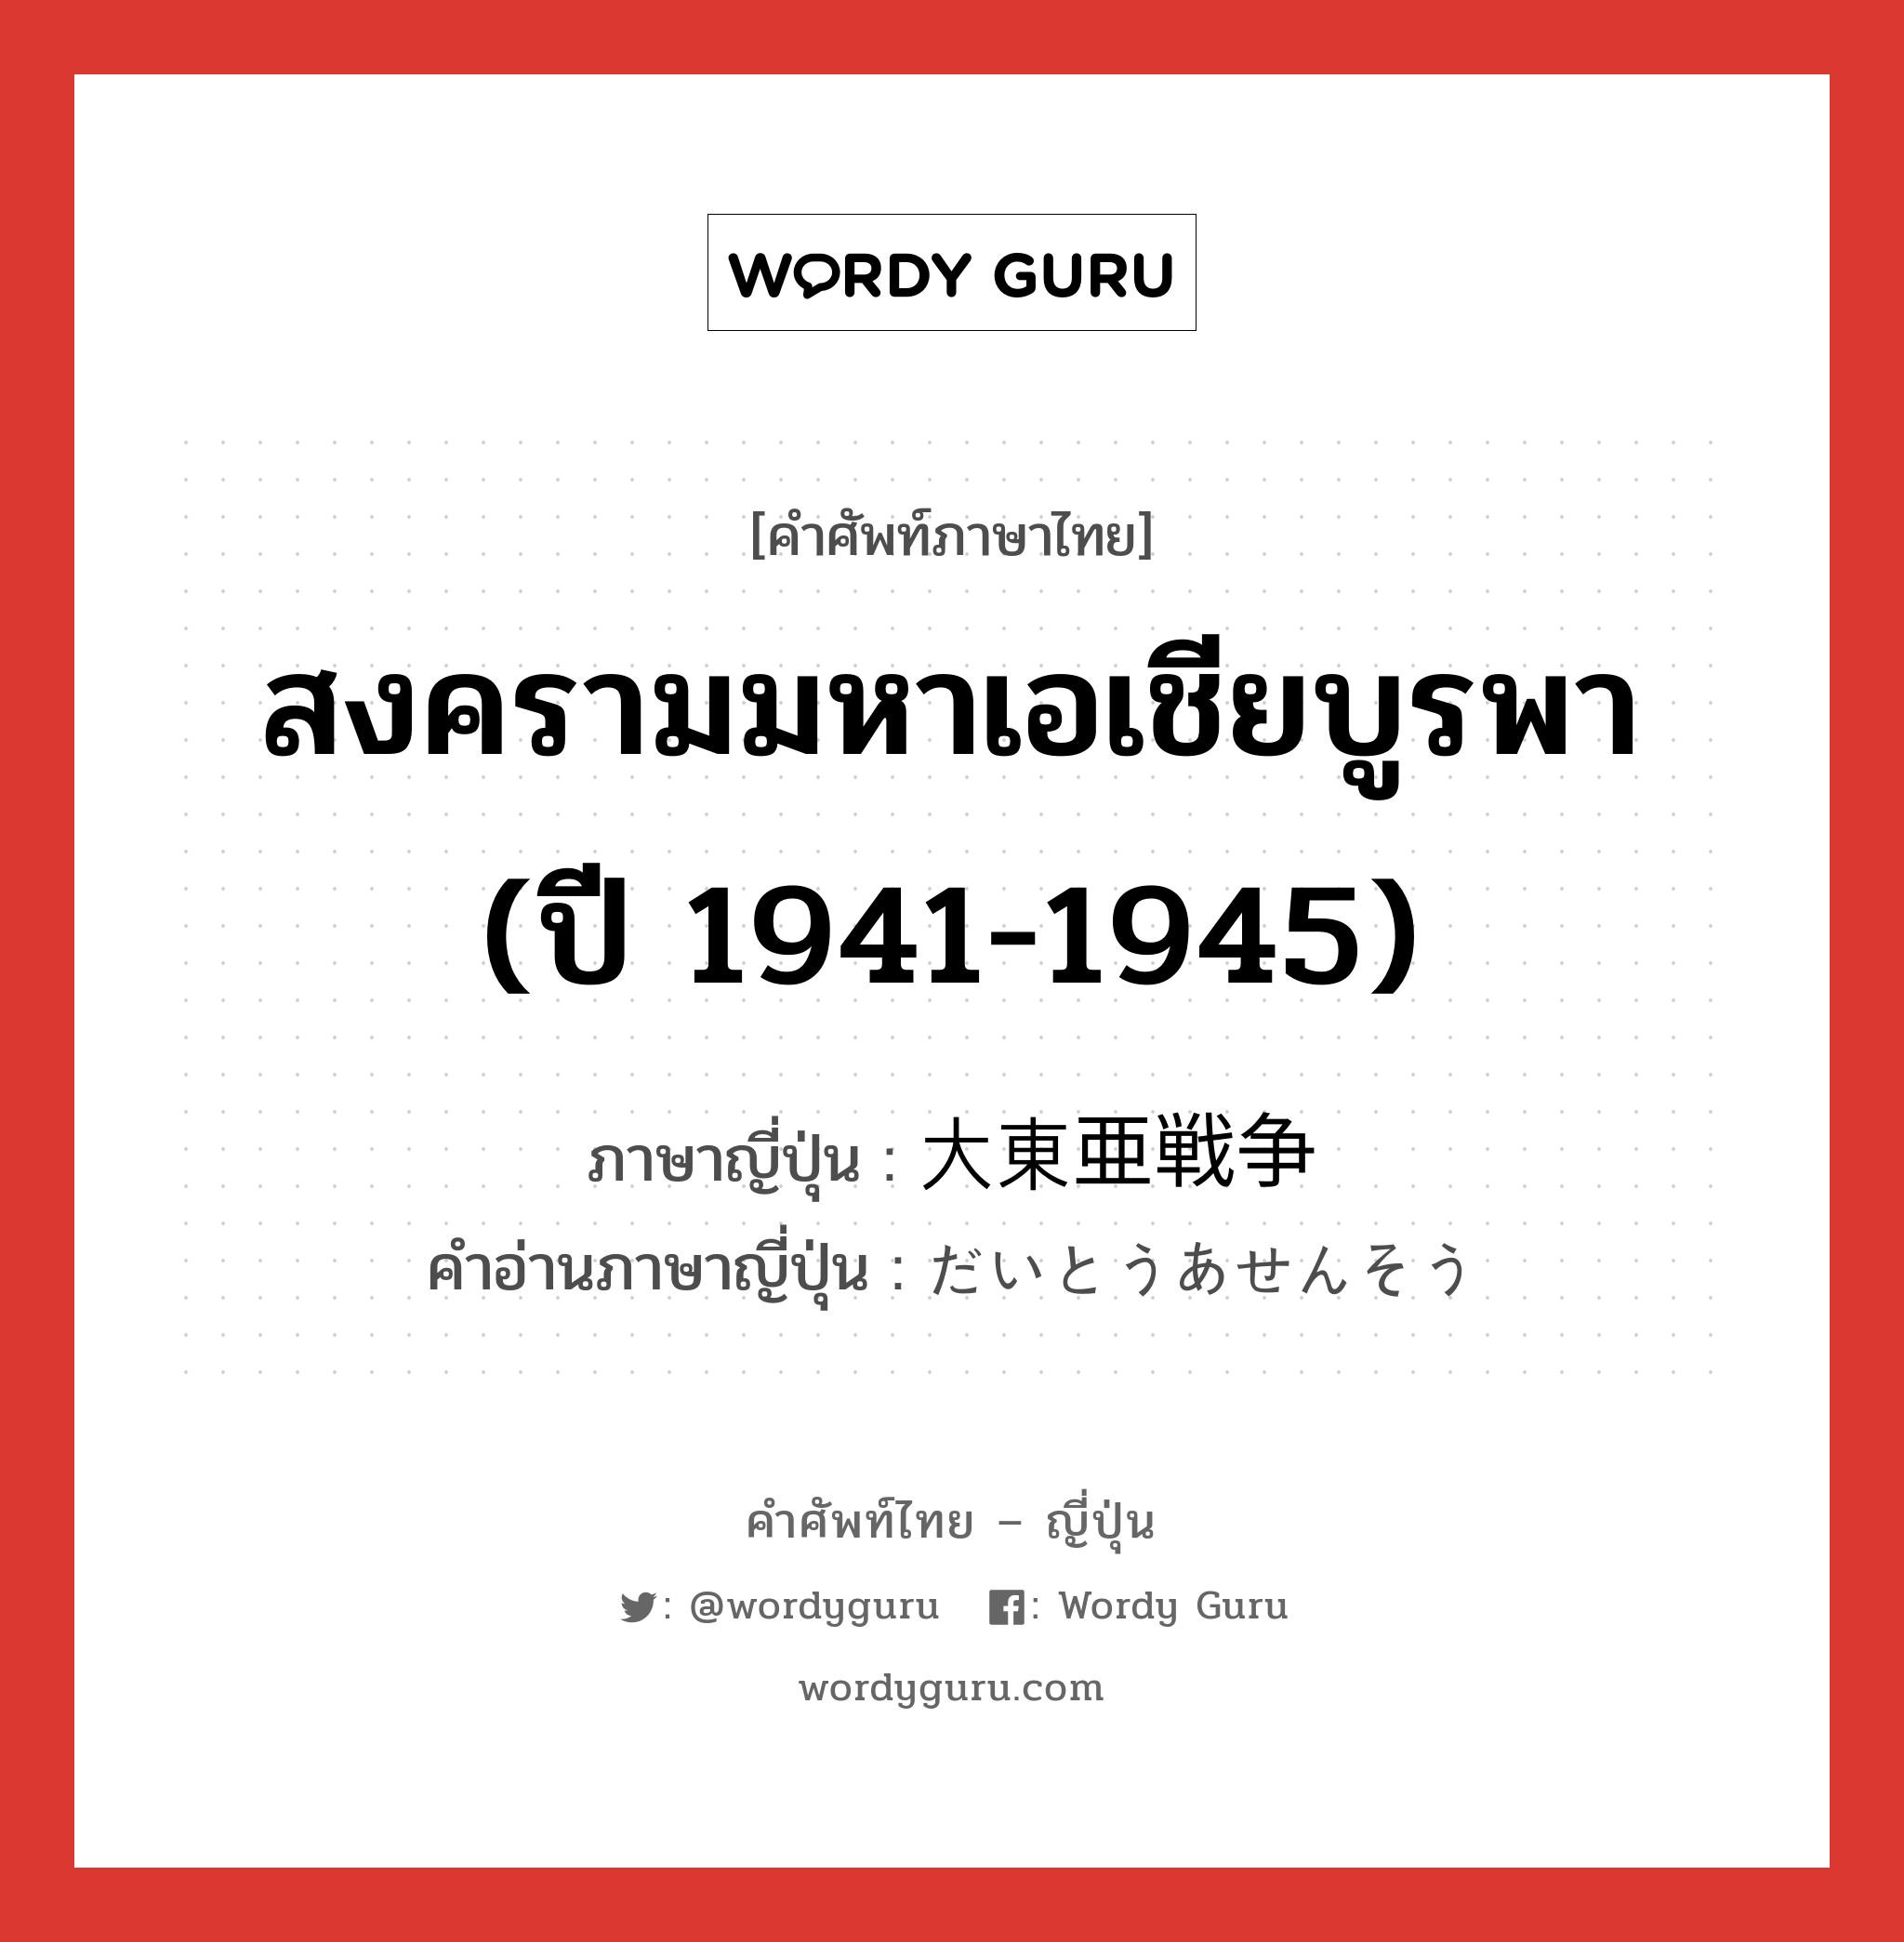 สงครามมหาเอเชียบูรพา (ปี 1941-1945) ภาษาญี่ปุ่นคืออะไร, คำศัพท์ภาษาไทย - ญี่ปุ่น สงครามมหาเอเชียบูรพา (ปี 1941-1945) ภาษาญี่ปุ่น 大東亜戦争 คำอ่านภาษาญี่ปุ่น だいとうあせんそう หมวด n หมวด n